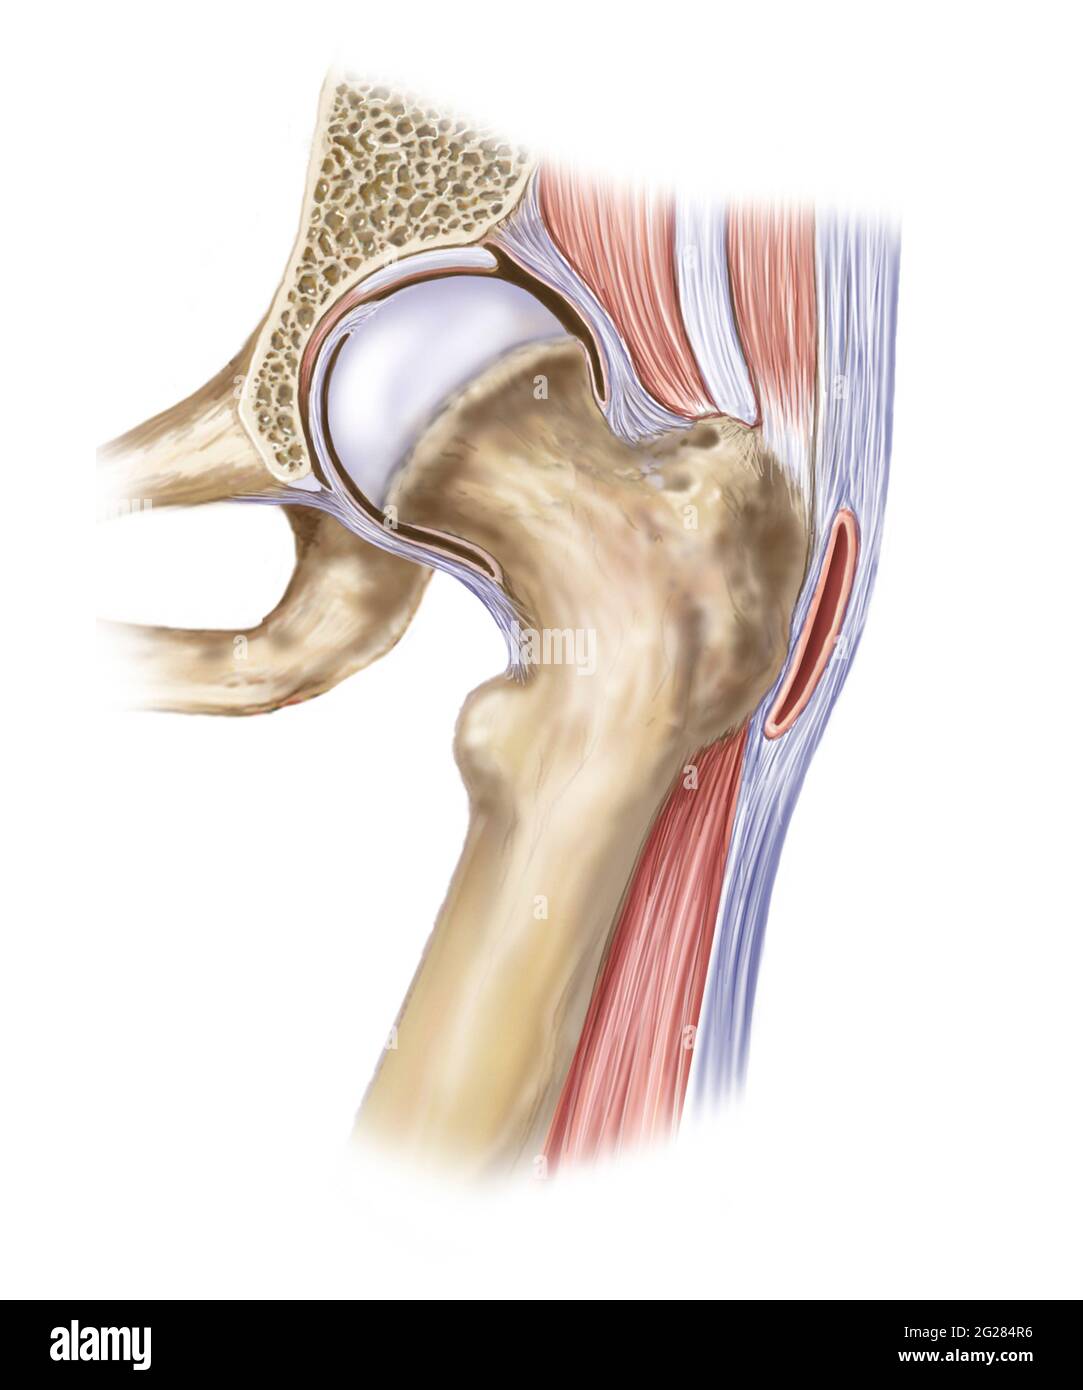 Dettaglio dei muscoli e dei legamenti dell'articolazione dell'anca. Foto Stock